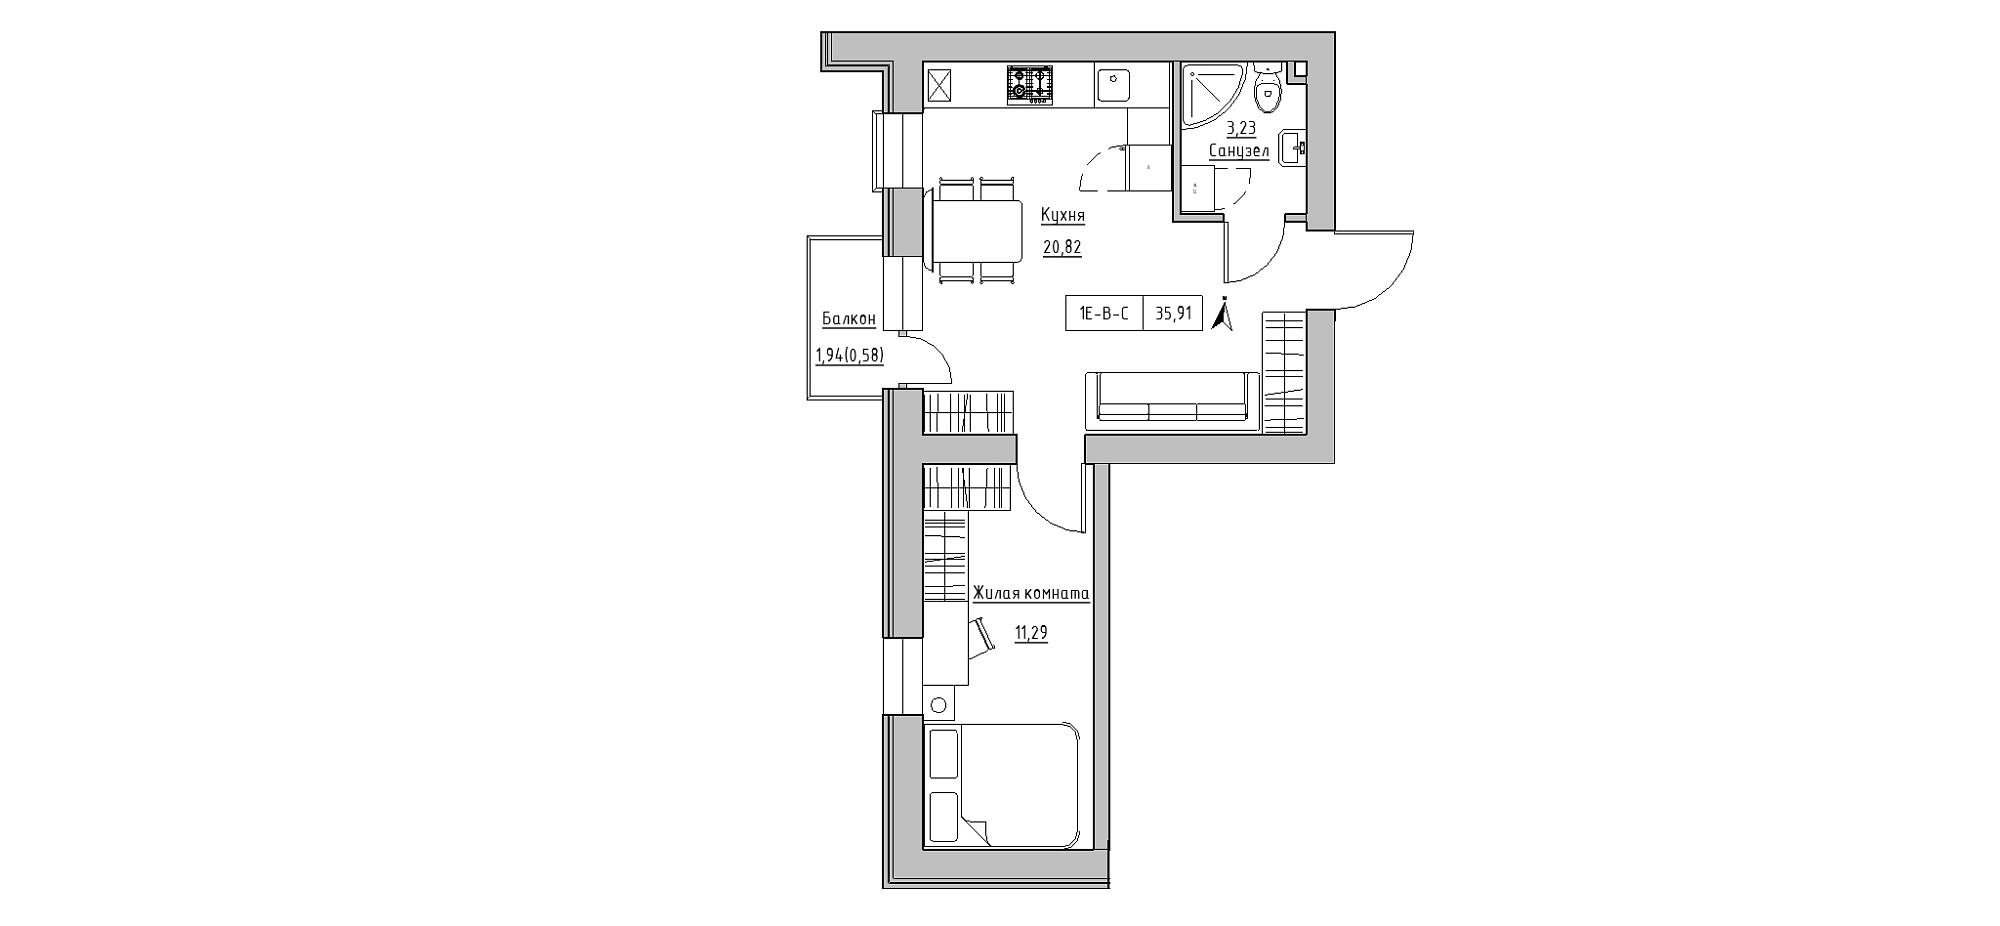 Планировка 1-к квартира площей 35.91м2, KS-020-03/0009.